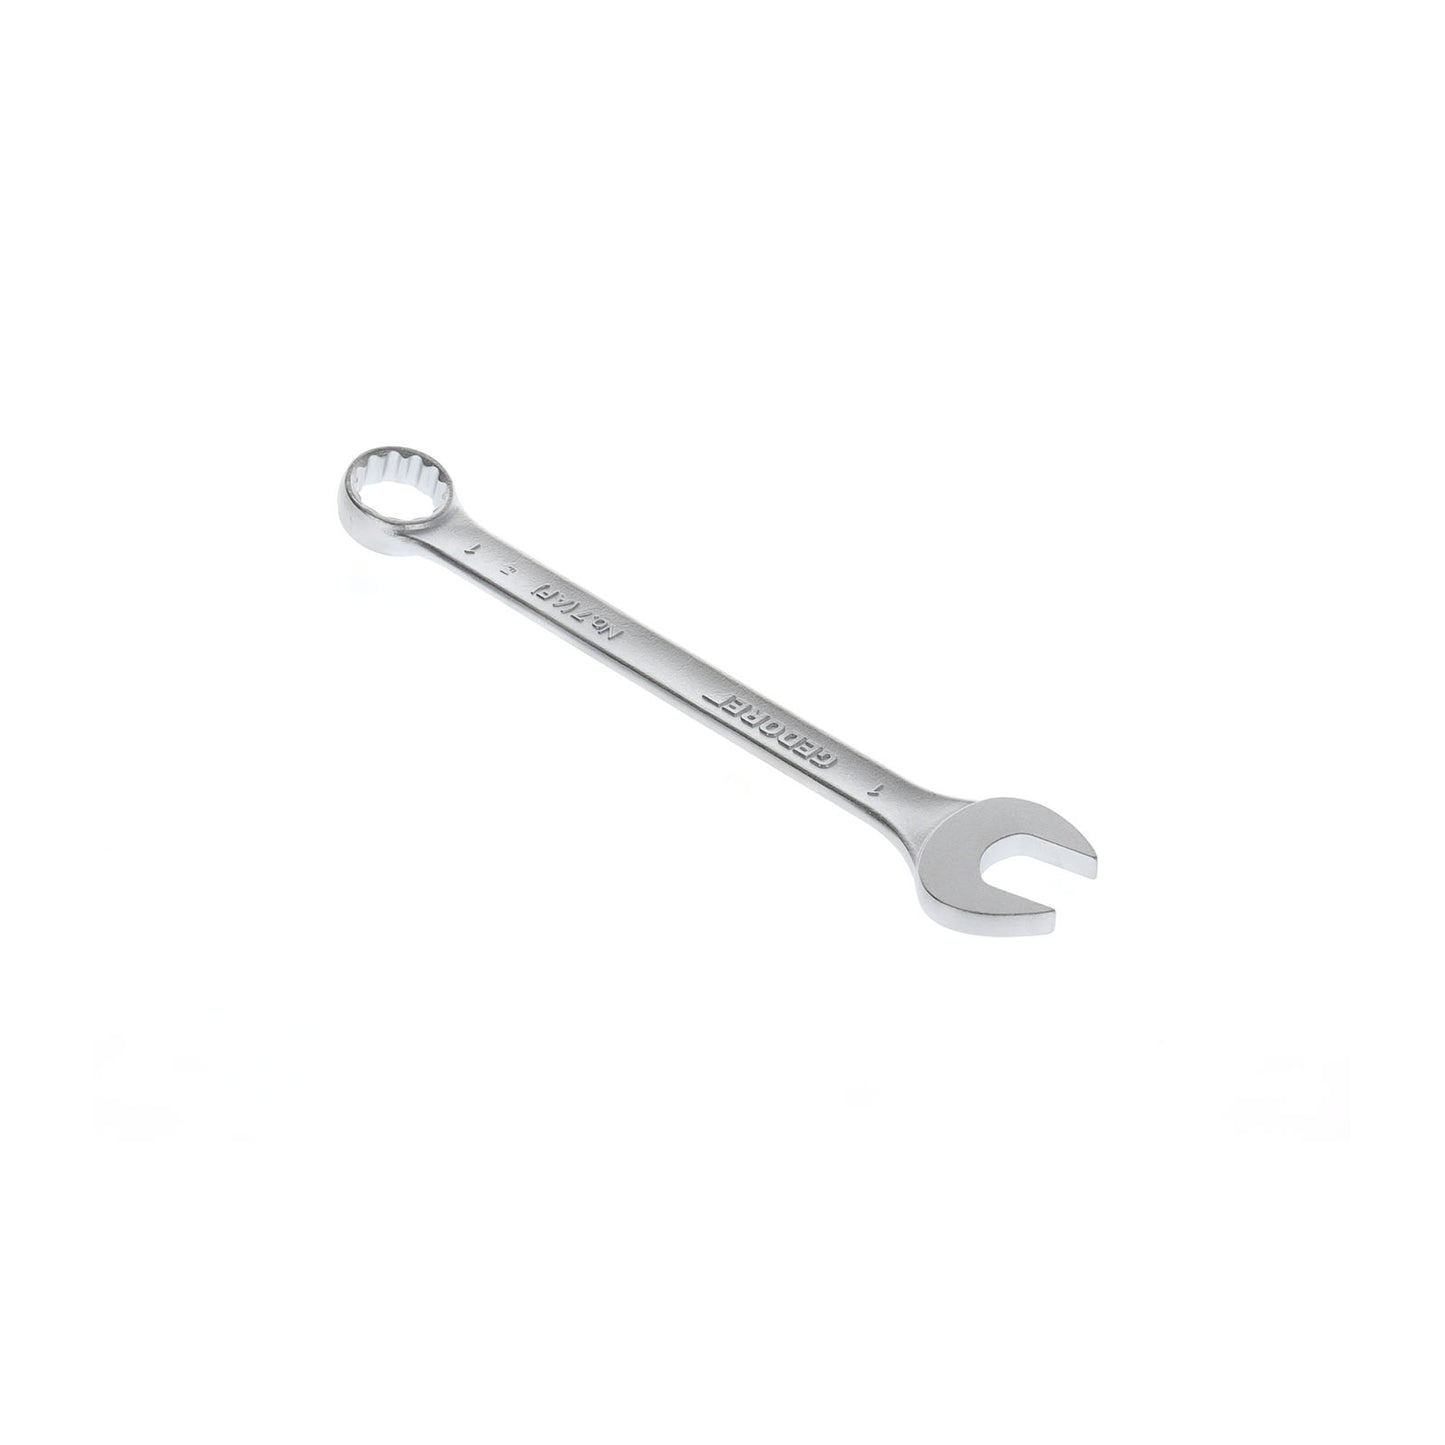 GEDORE 7 1AF - Combination Wrench, 1AF (6100460)